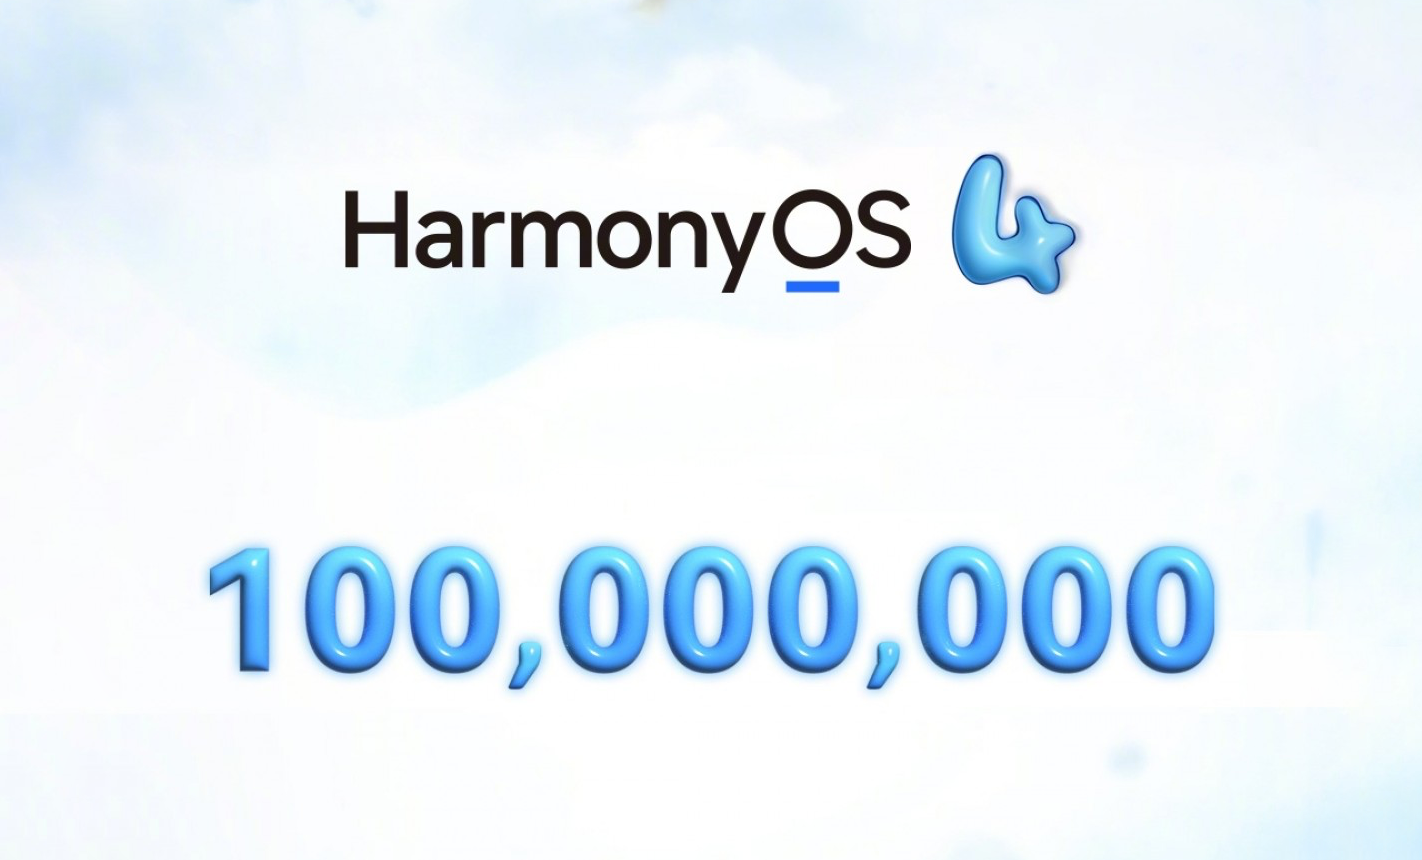 В мире выпущено 100 млн устройств на новейшей замене Android от Huawei — HarmonyOS 4